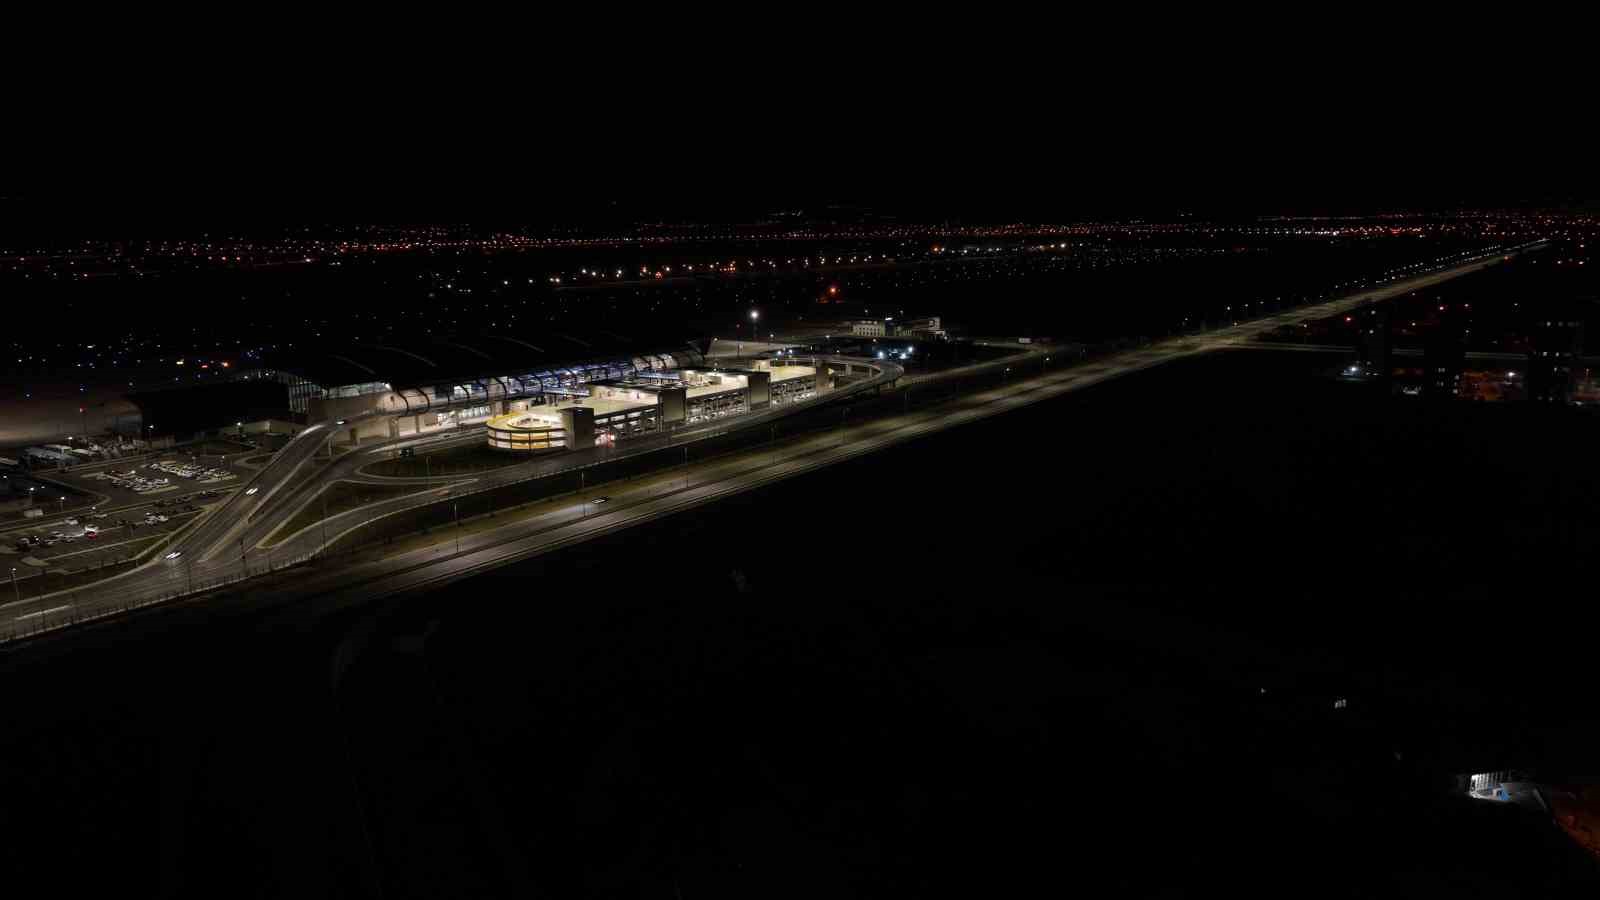 havalimanı yeni terminal binası önüne 150 milyon tl’lik yeni yol